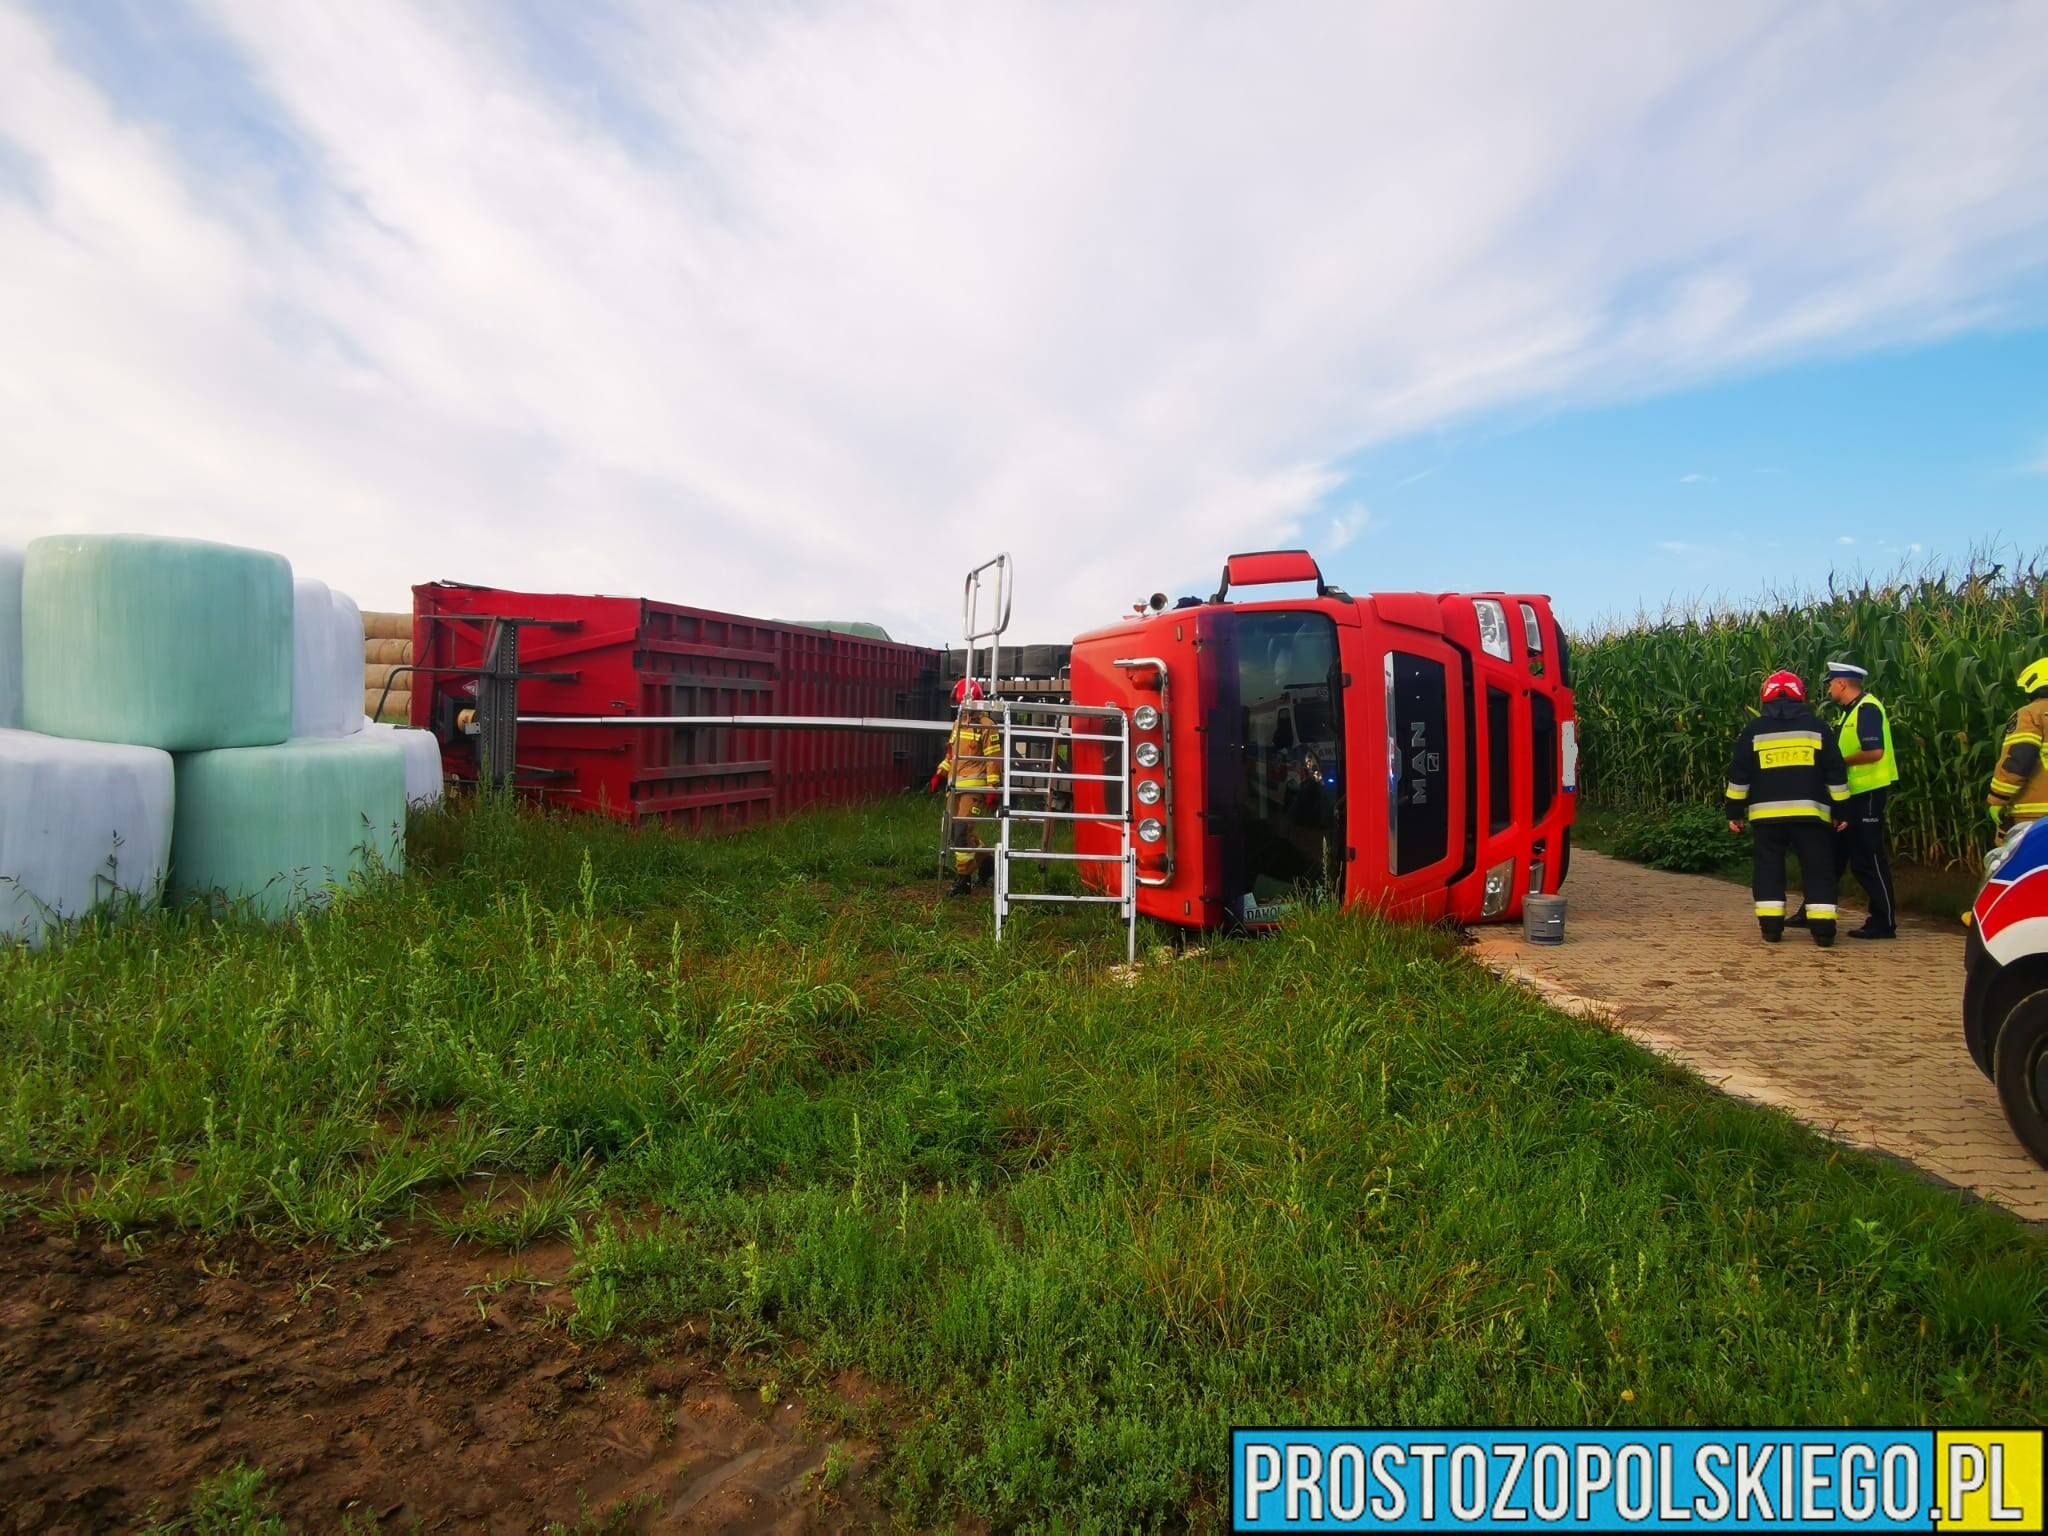 Podczas rozładunku materiału sypkiego doszło do przewrócenia samochodu ciężarowego w miejscowości Witosławice.